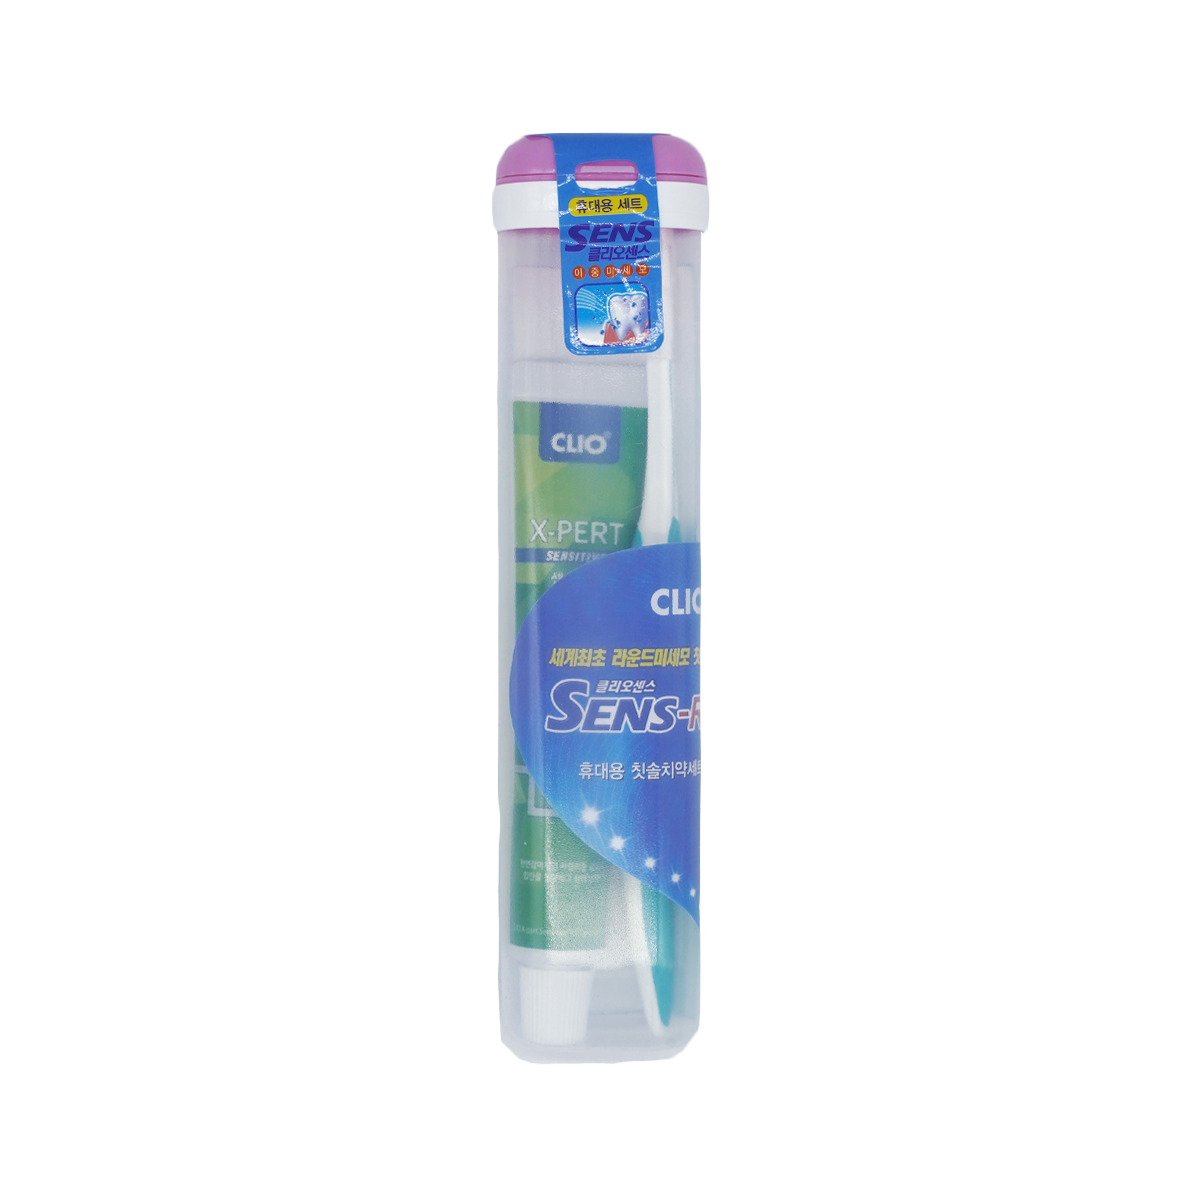 фото Набор зубная паста + щетка clio new portable sense r + expert toothpaste